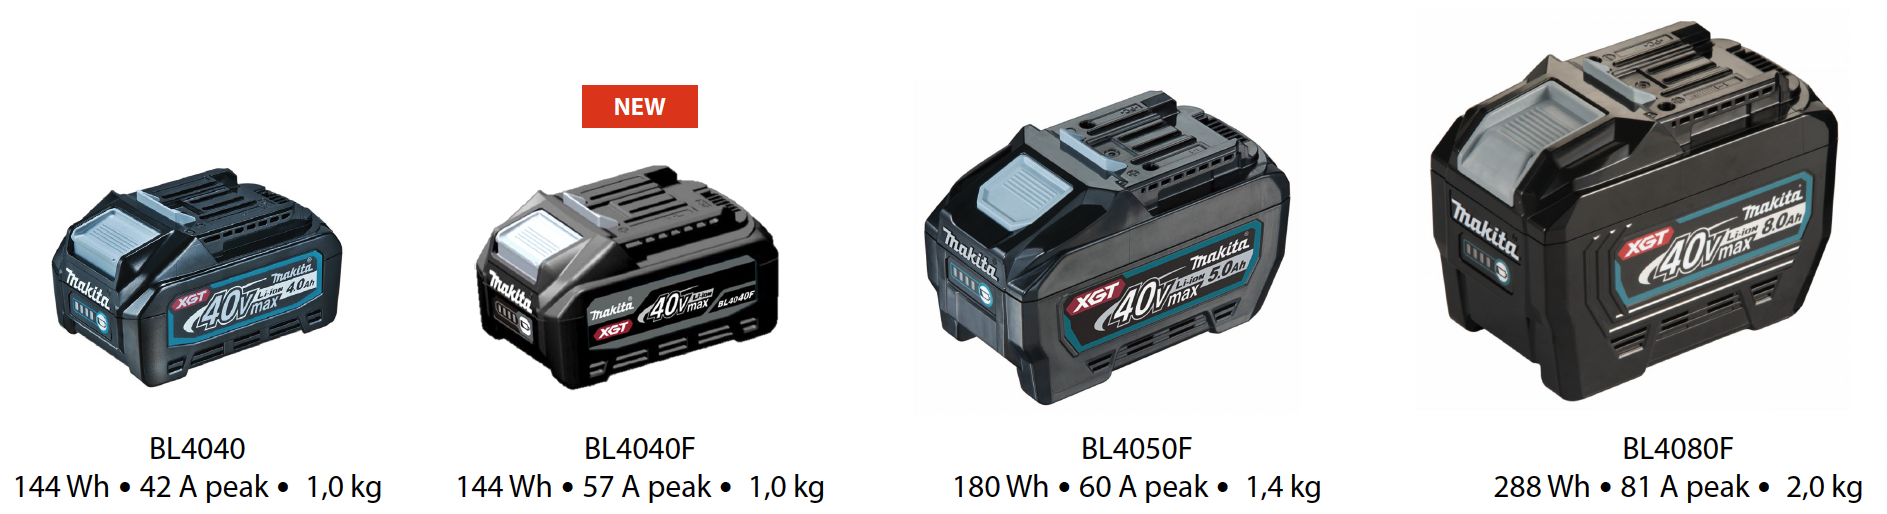 Comparaison de la batterie BL4040F avec les autres batteries de la gamme 